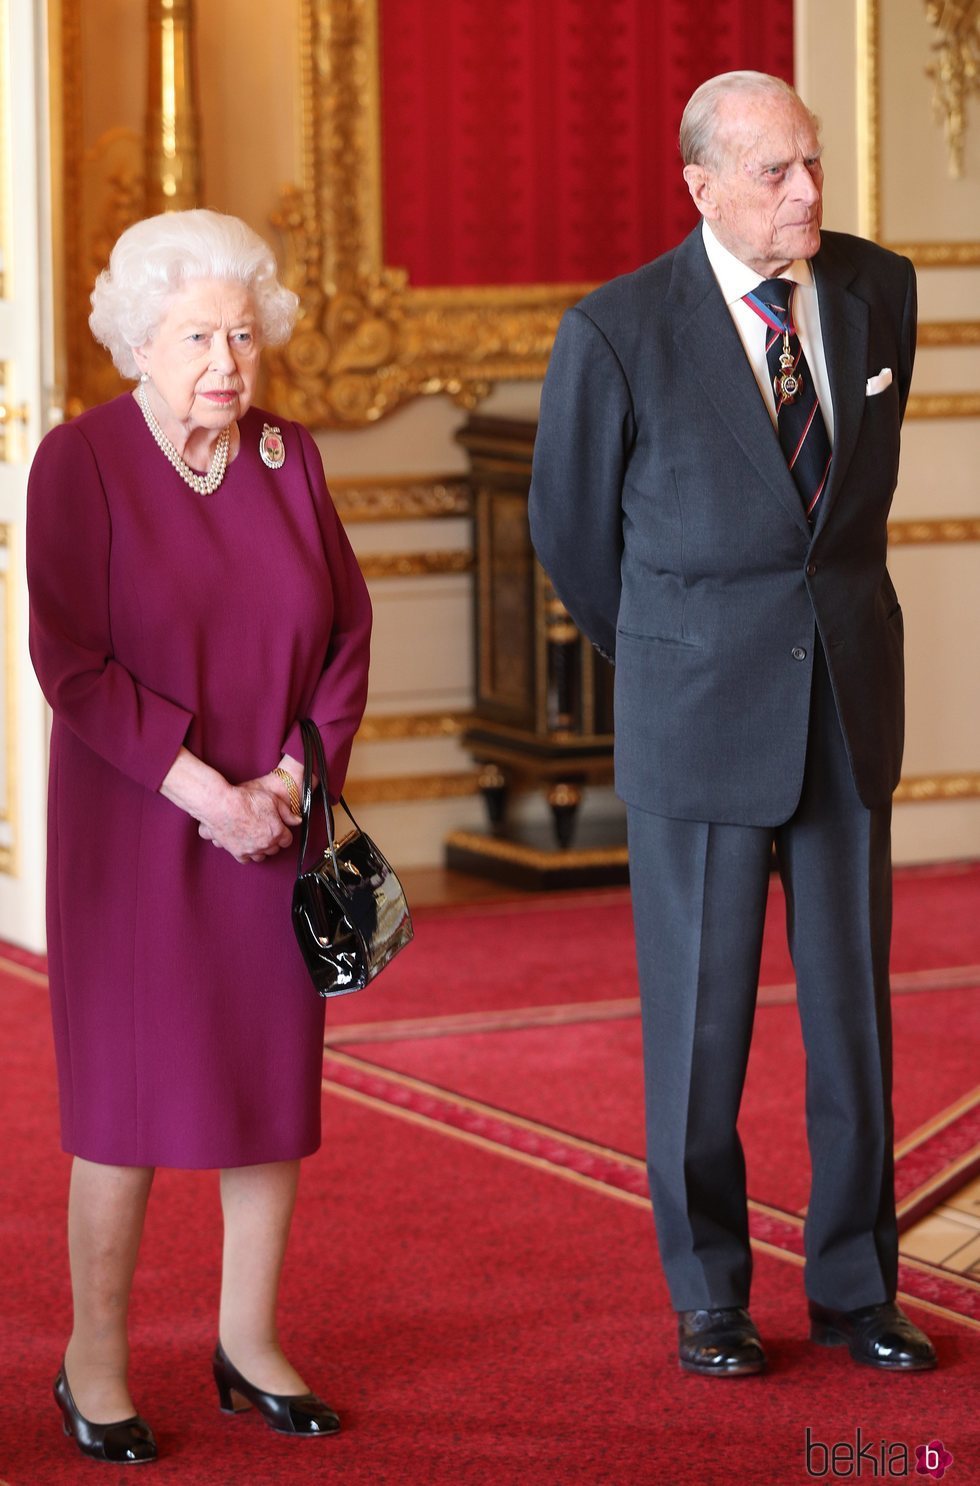 La Reina Isabel y el Duque de Edimburgo reaparecen tras el nacimiento del primer hijo del Príncipe Harry y Meghan Markle